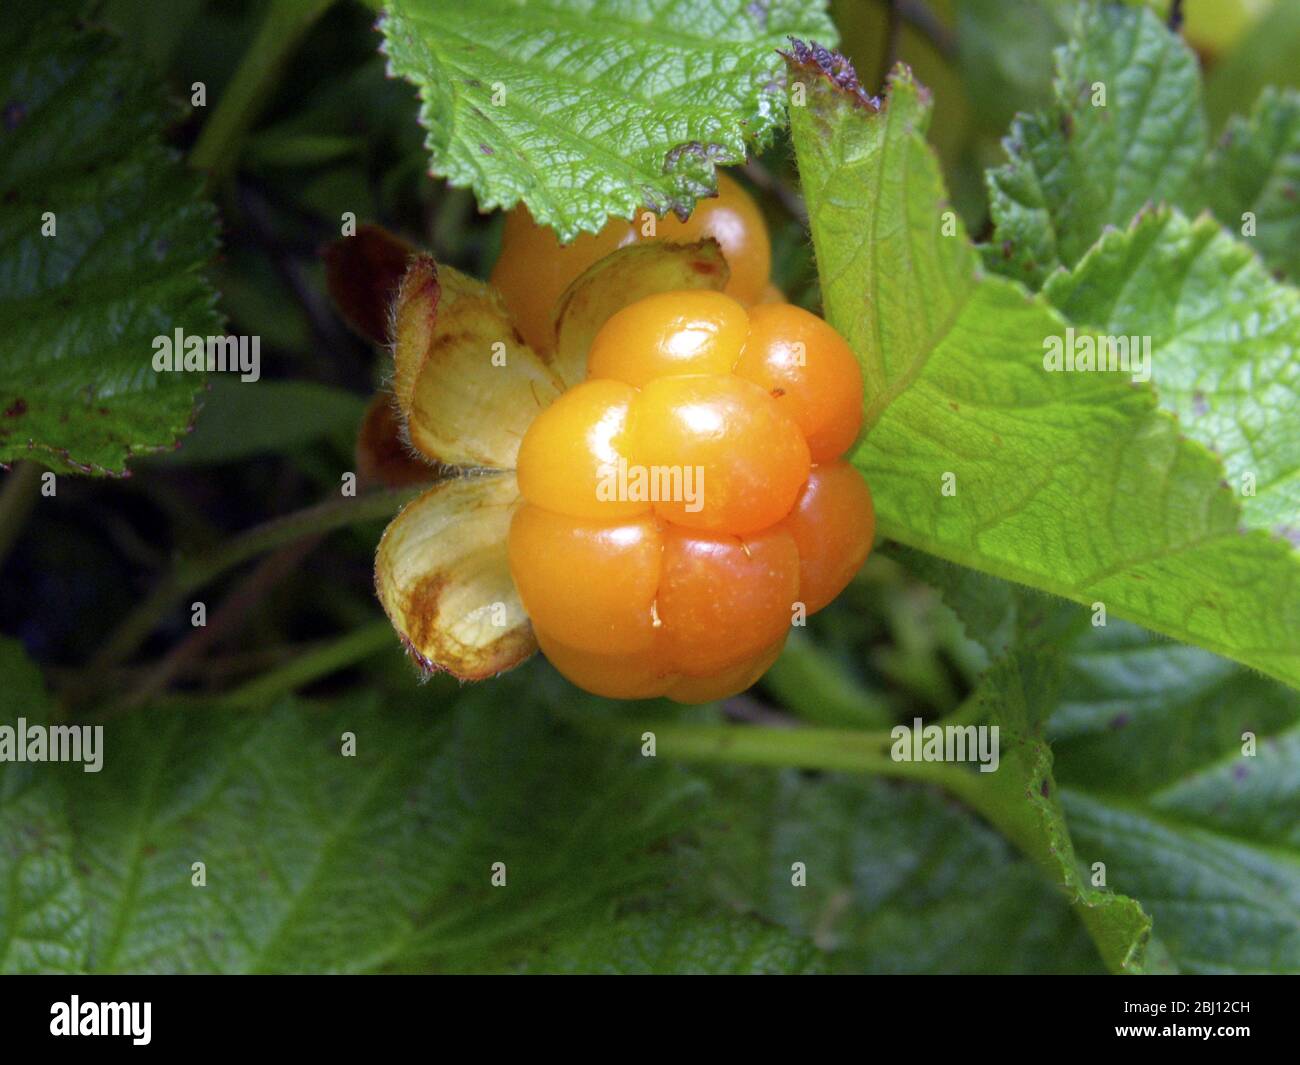 Il bacche nuvoloso, Rubus chamaemorus L., Rosaceae, è un piccolo brambone erbaceo comune alle torbiere nell'emisfero settentrionale. Il bacca ha un m forte Foto Stock